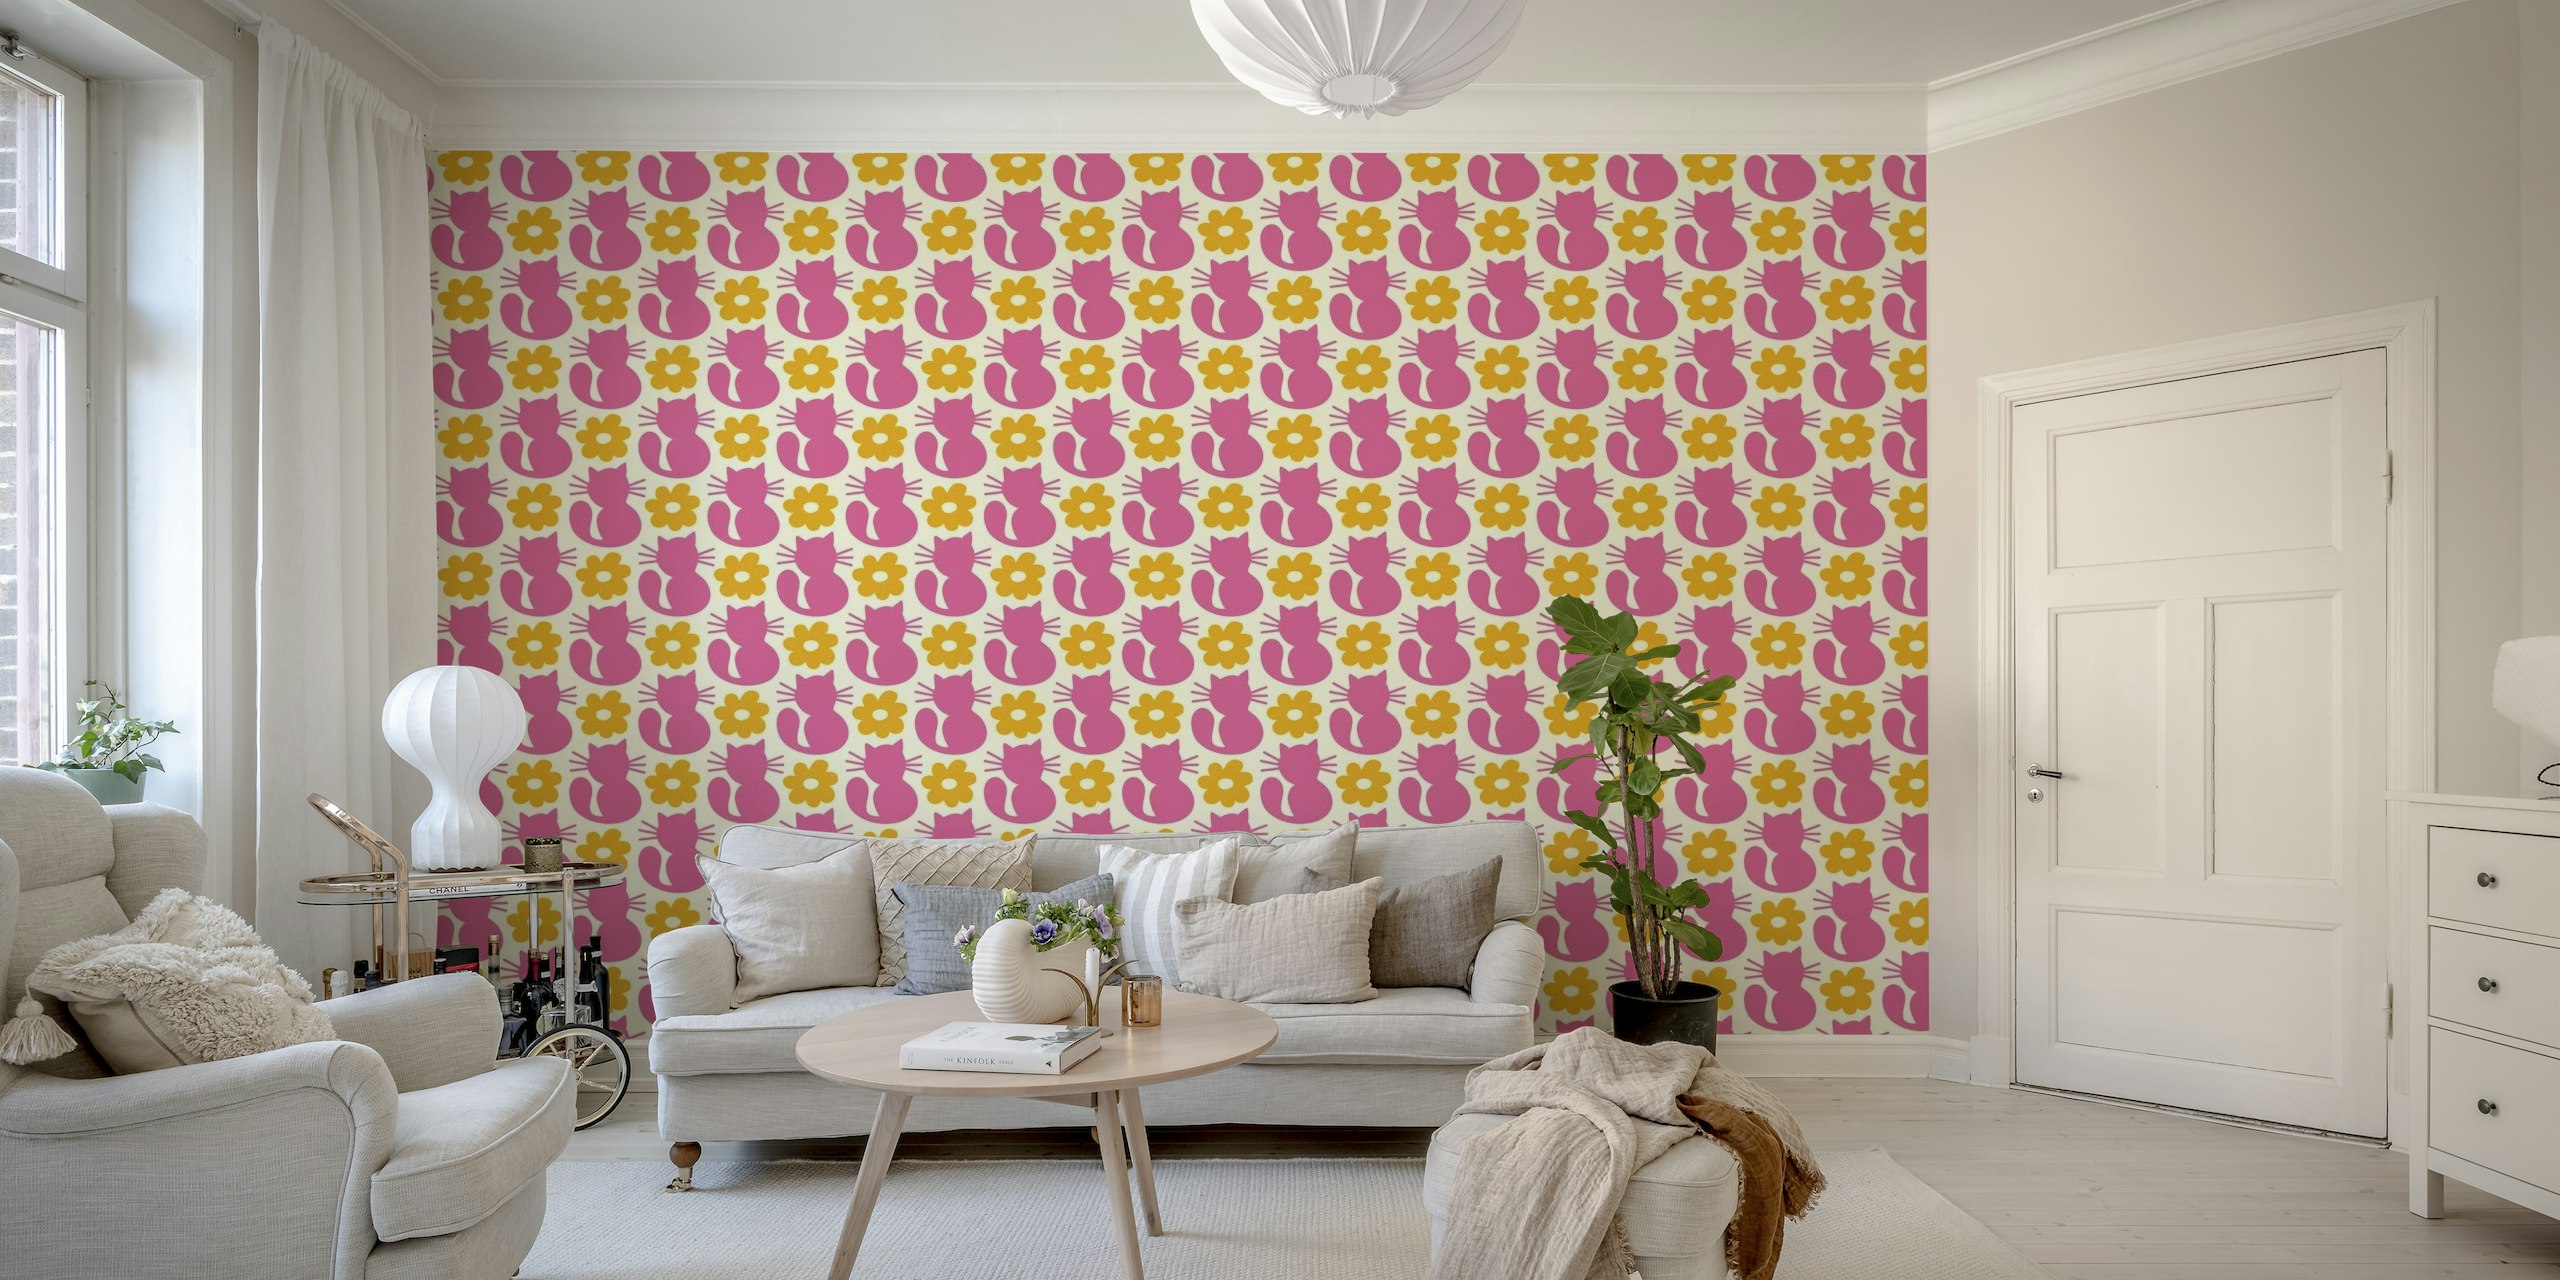 Illustration de silhouettes de chats ludiques de style rétro avec des fleurs jaunes sur fond rose, papier peint mural